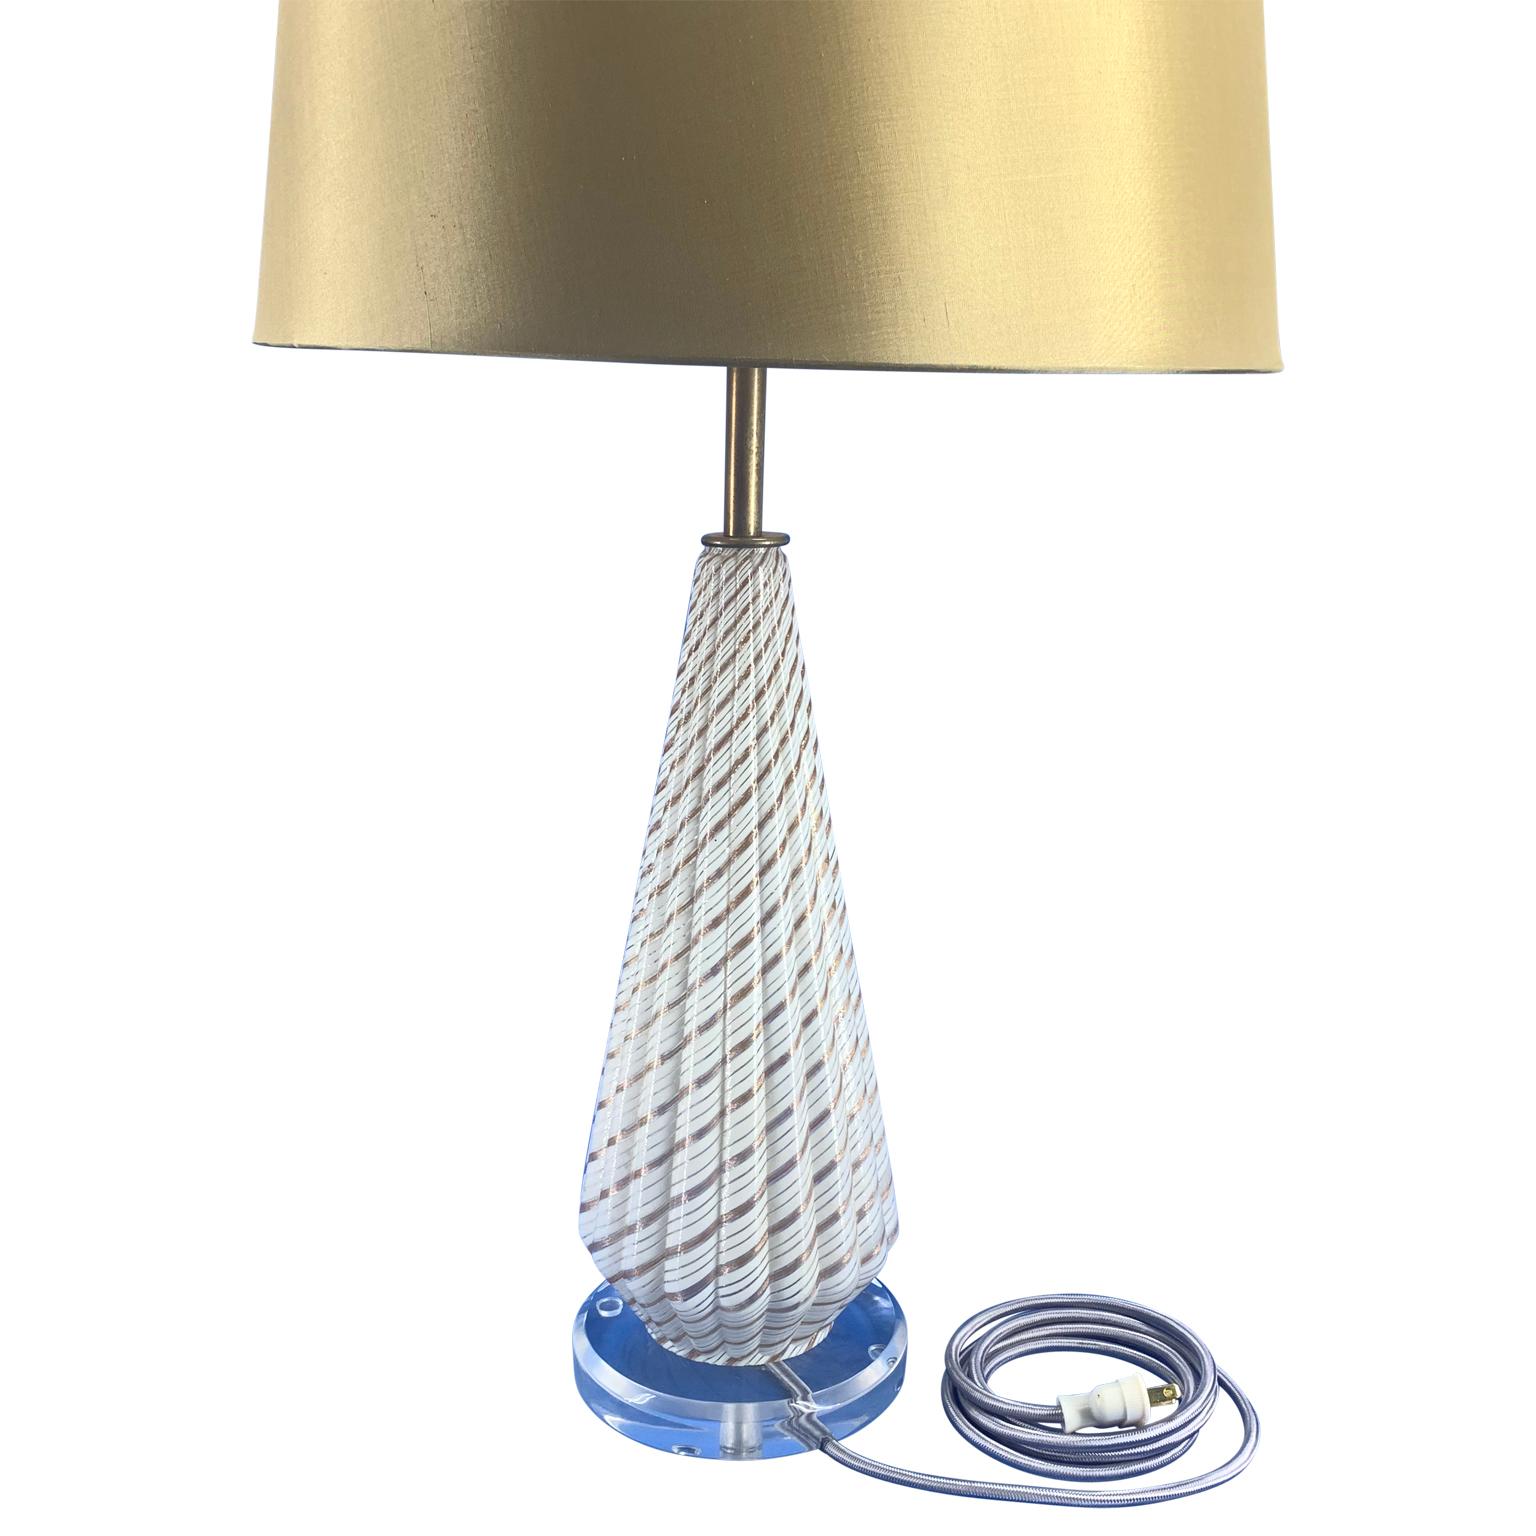 Lampe de table en verre d'art blanc de Murano sur une base ronde en Lucite.
La lampe a été refaite à neuf et possède un embout en Lucite.